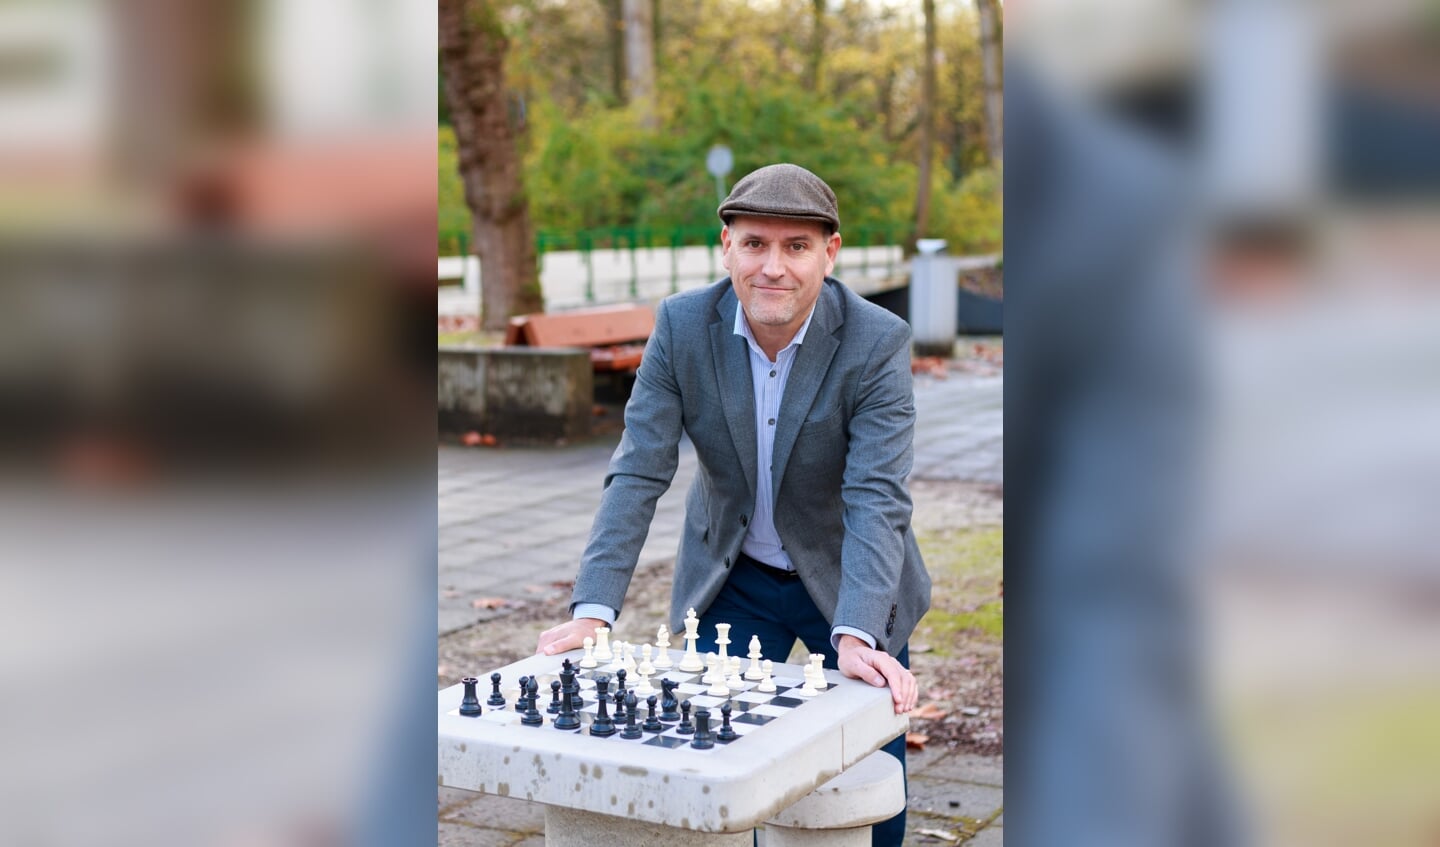 Jesús Medina Molina ontwikkelde het concept voor schaaktafels in de openbare ruimte,